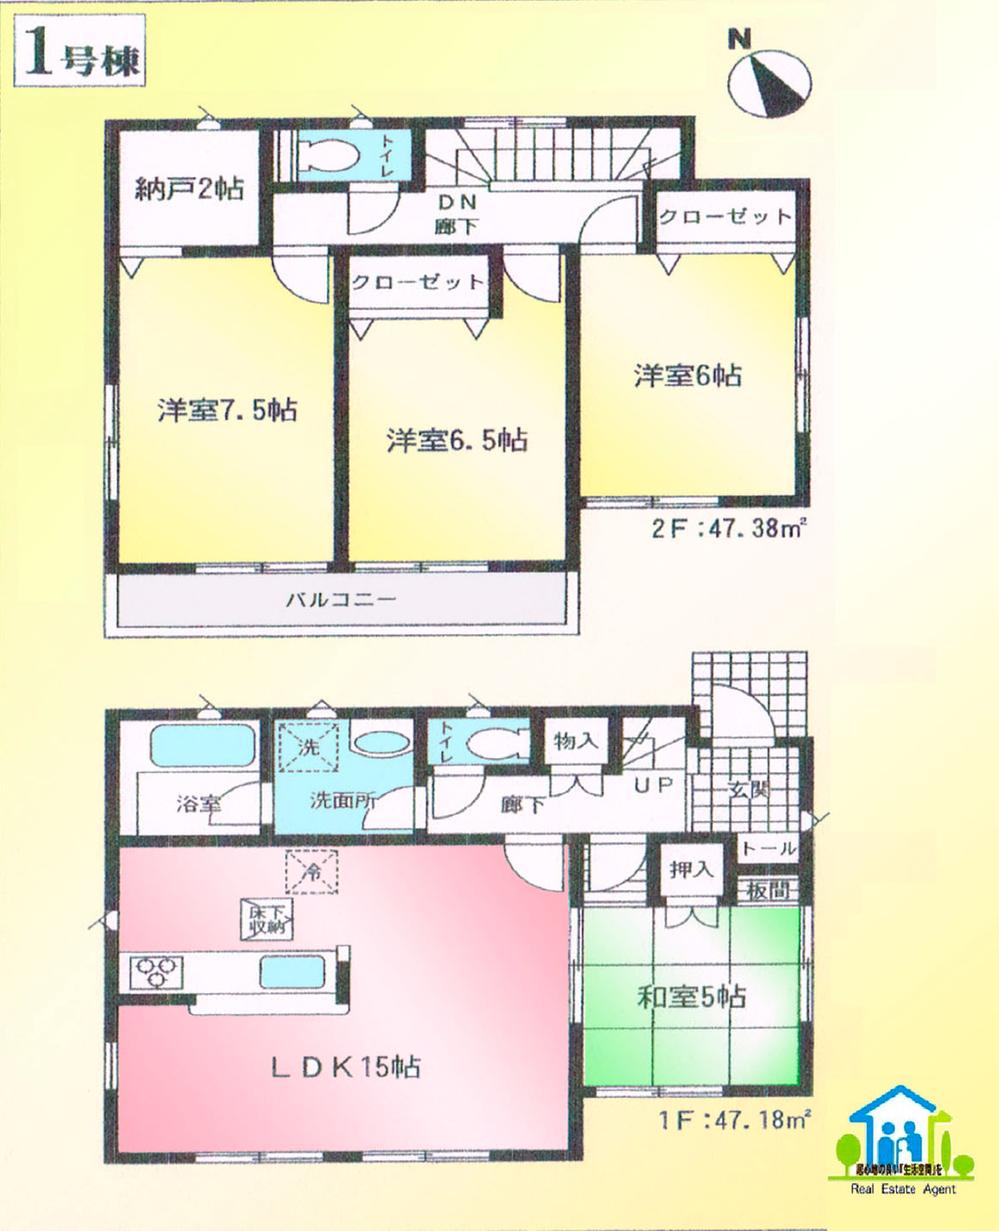 Floor plan. 17.8 million yen, 4LDK, Land area 235.01 sq m , Building area 94.56 sq m